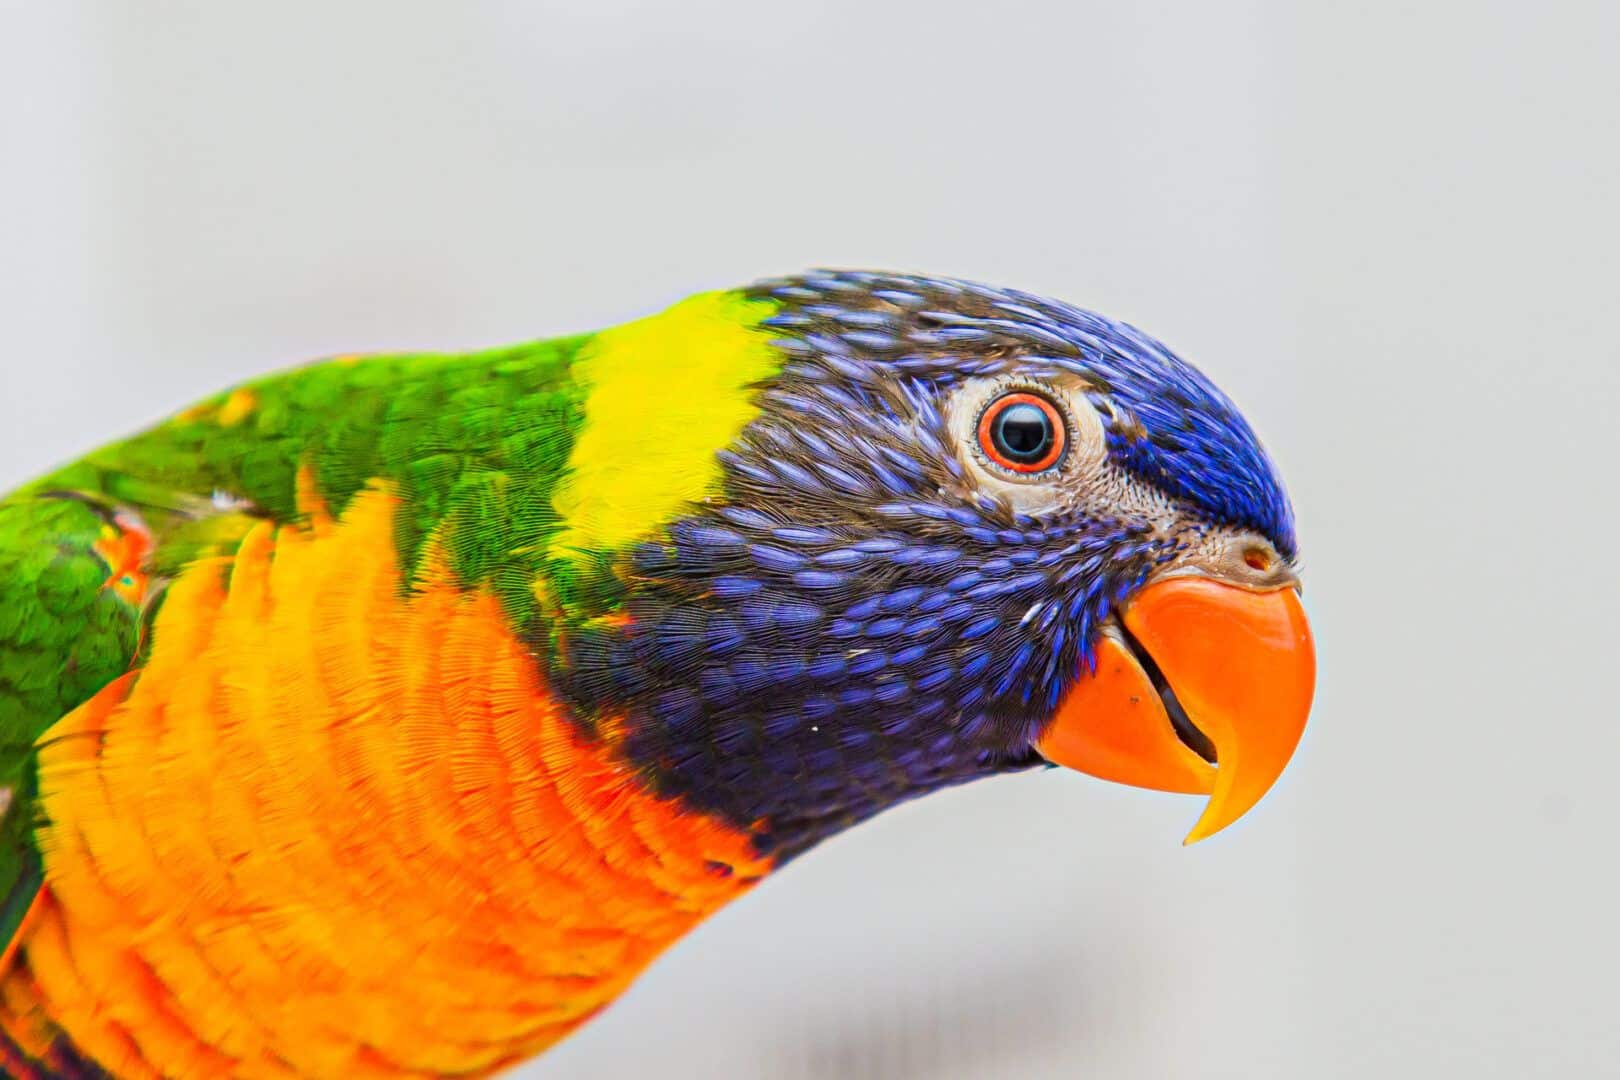 Aves exóticas - 15 espécies diferentonas para você conhecer